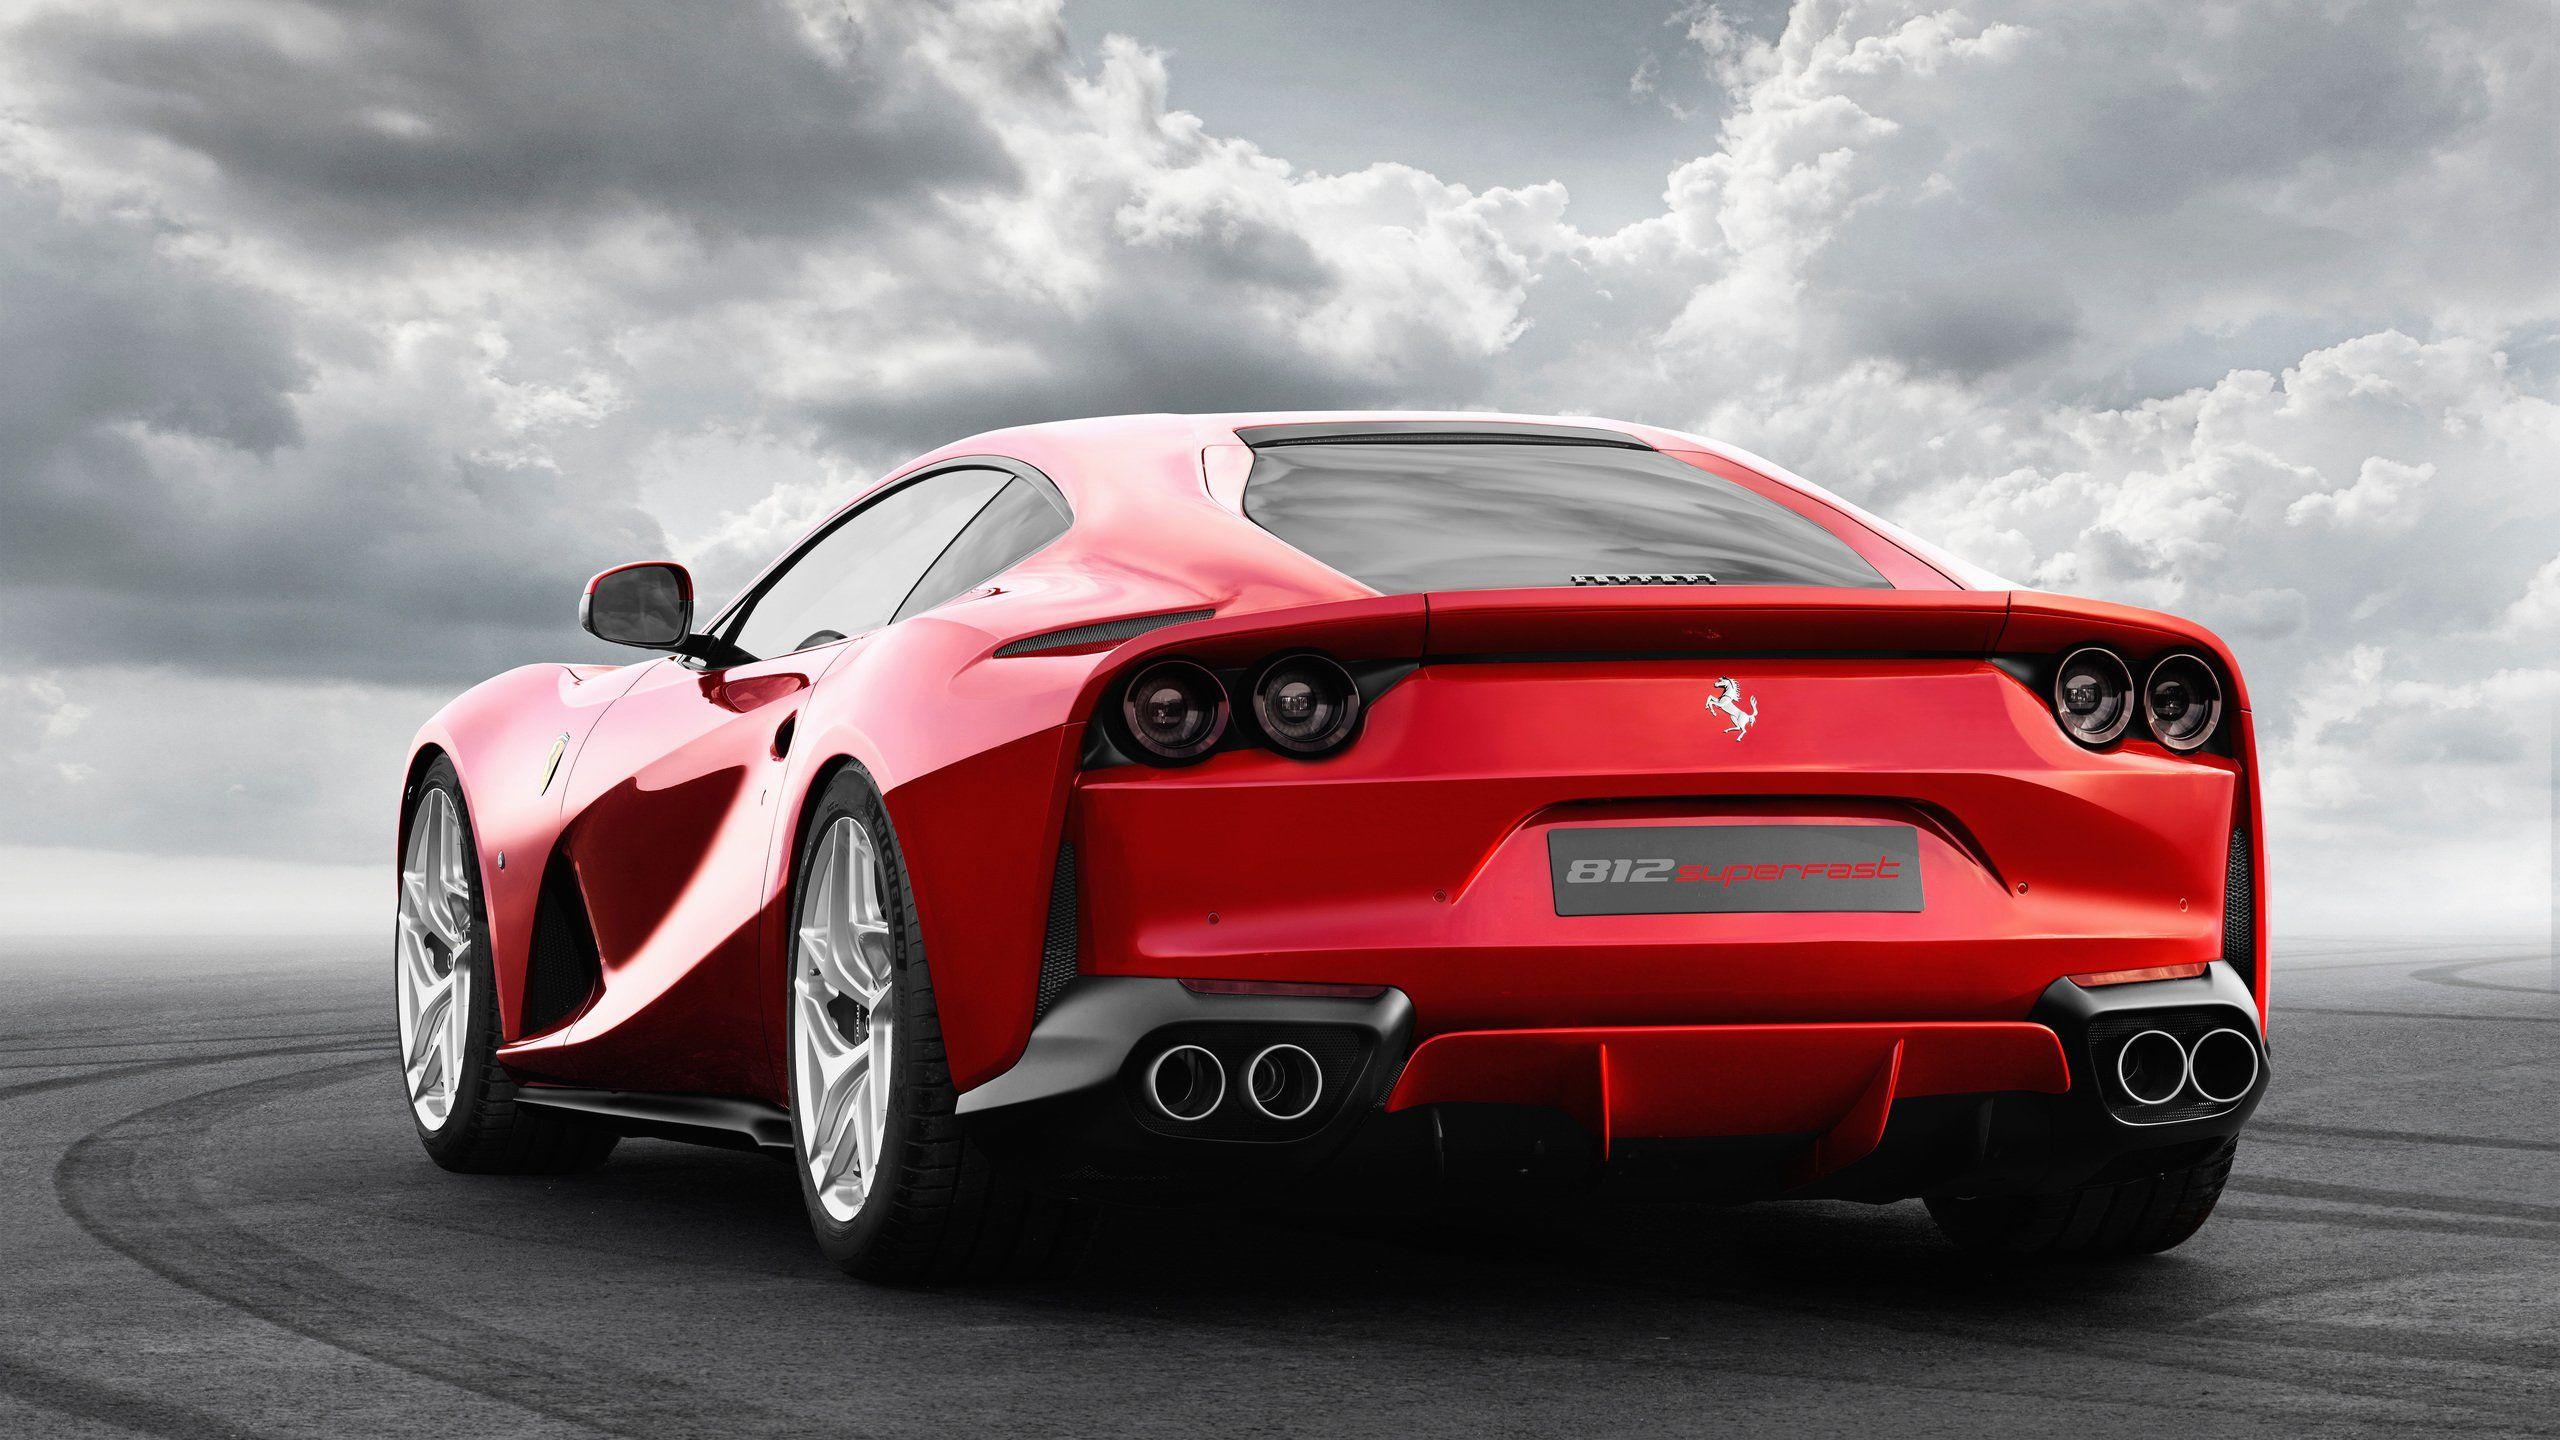 Ferrari Portofino Photo 2560x1440